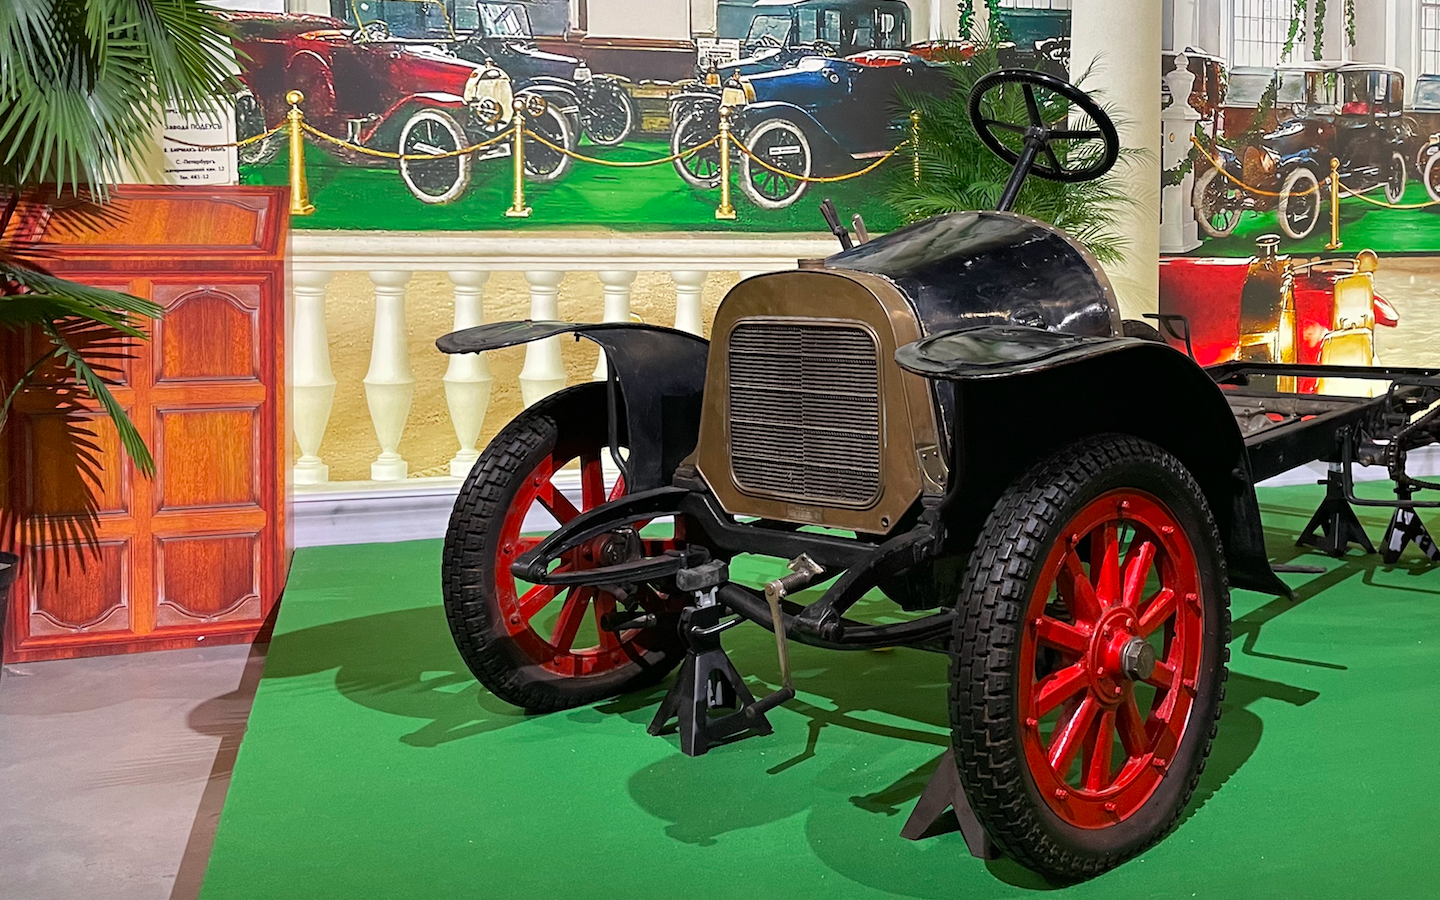 Музей Гаража особого назначения представил выставку истории начала автомобилизации России